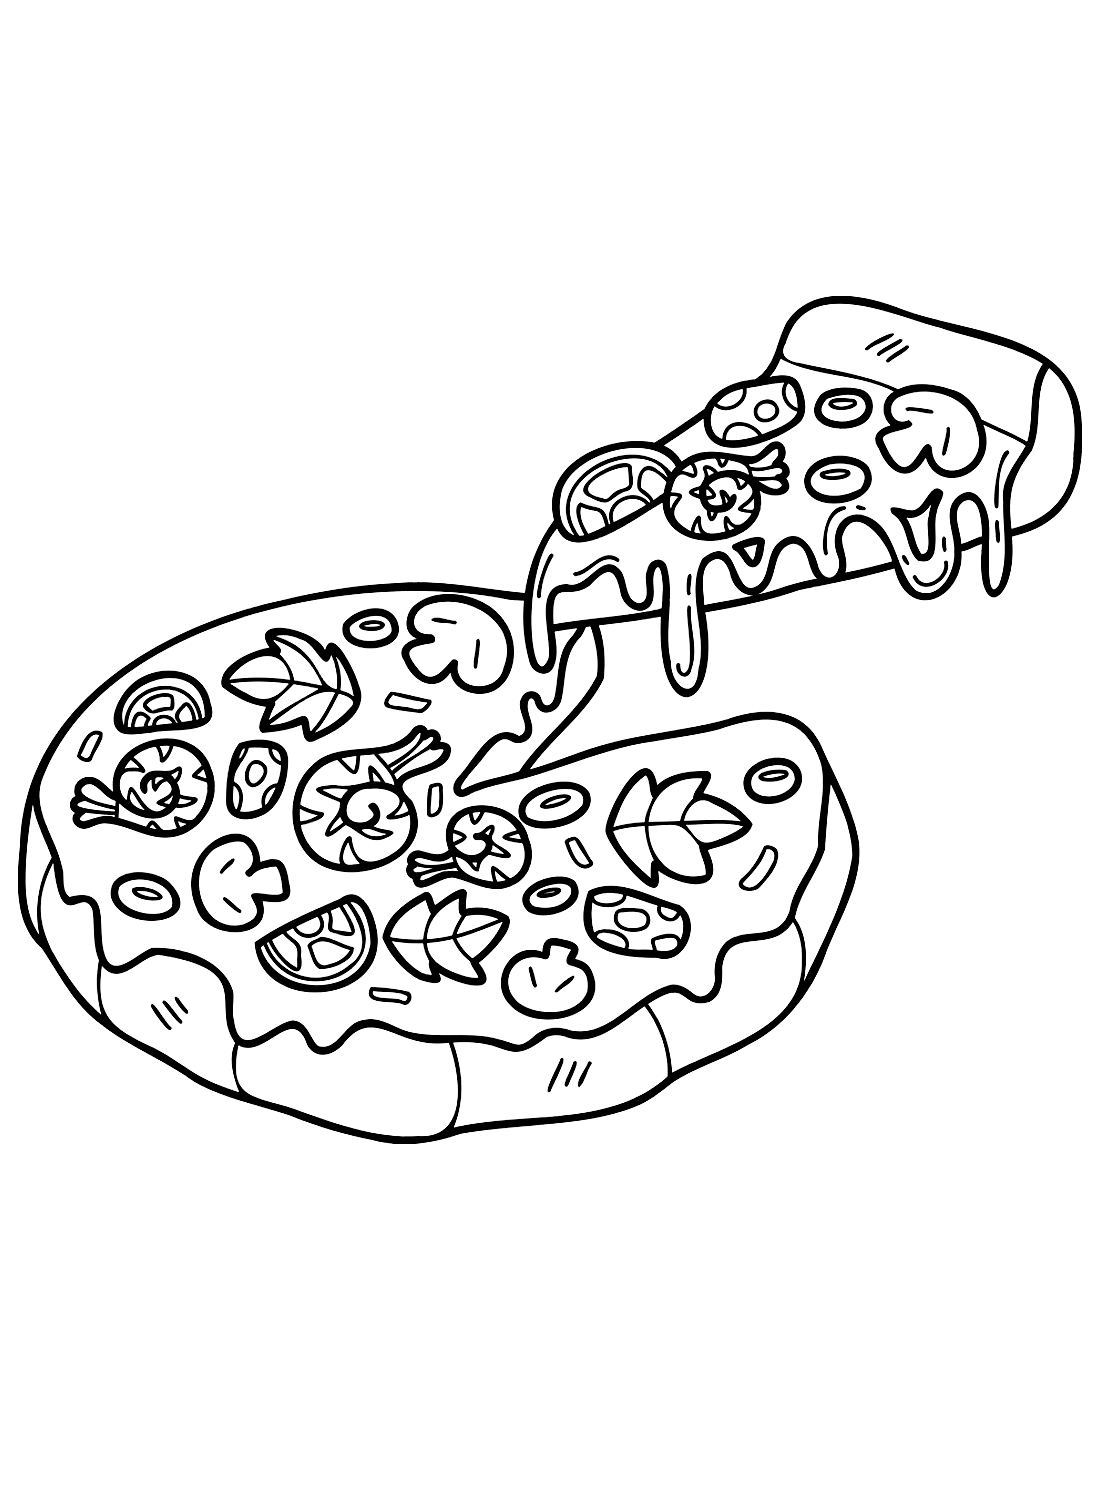 Kleurenvel pizza van Pizza